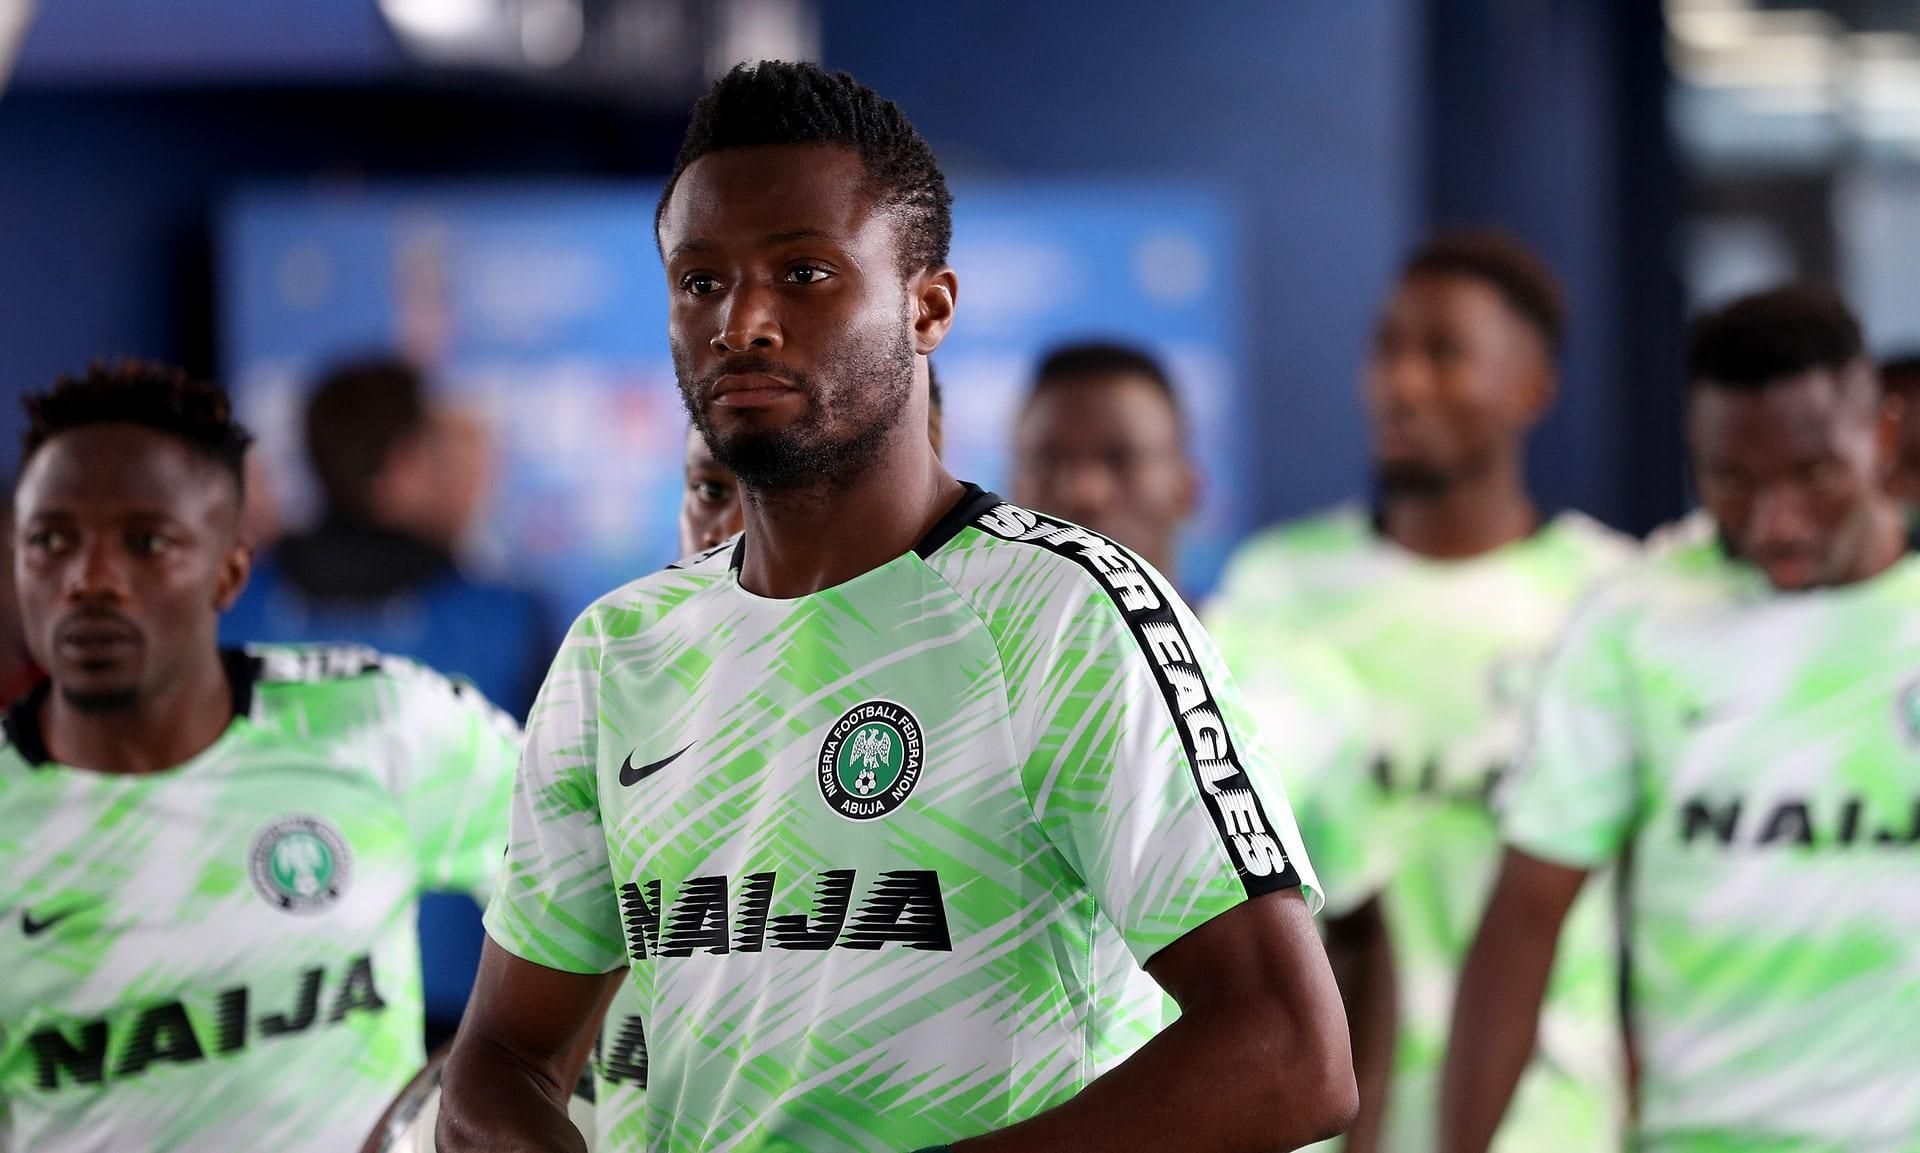 Батька капітана збірної Нігерії викрали перед матчем Чемпіонату світу проти Аргентини